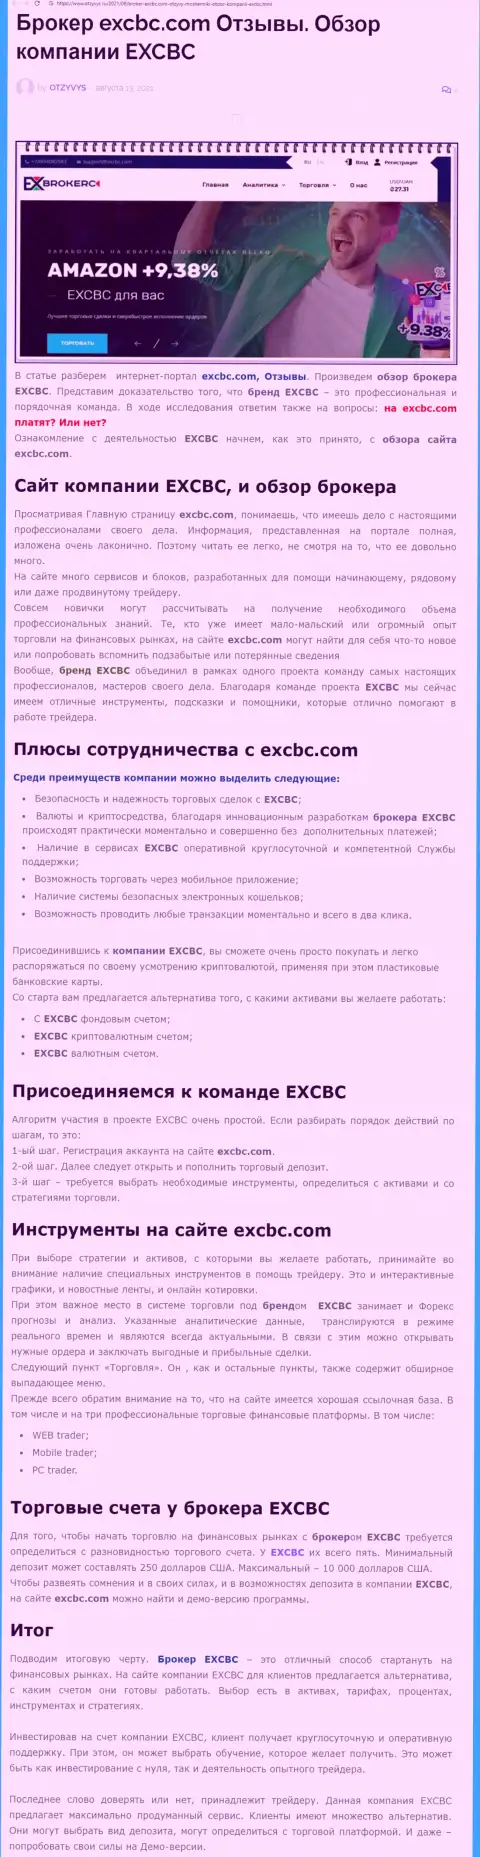 Статья о форекс организации ЕХ Брокерс на ресурсе otzyvys ru